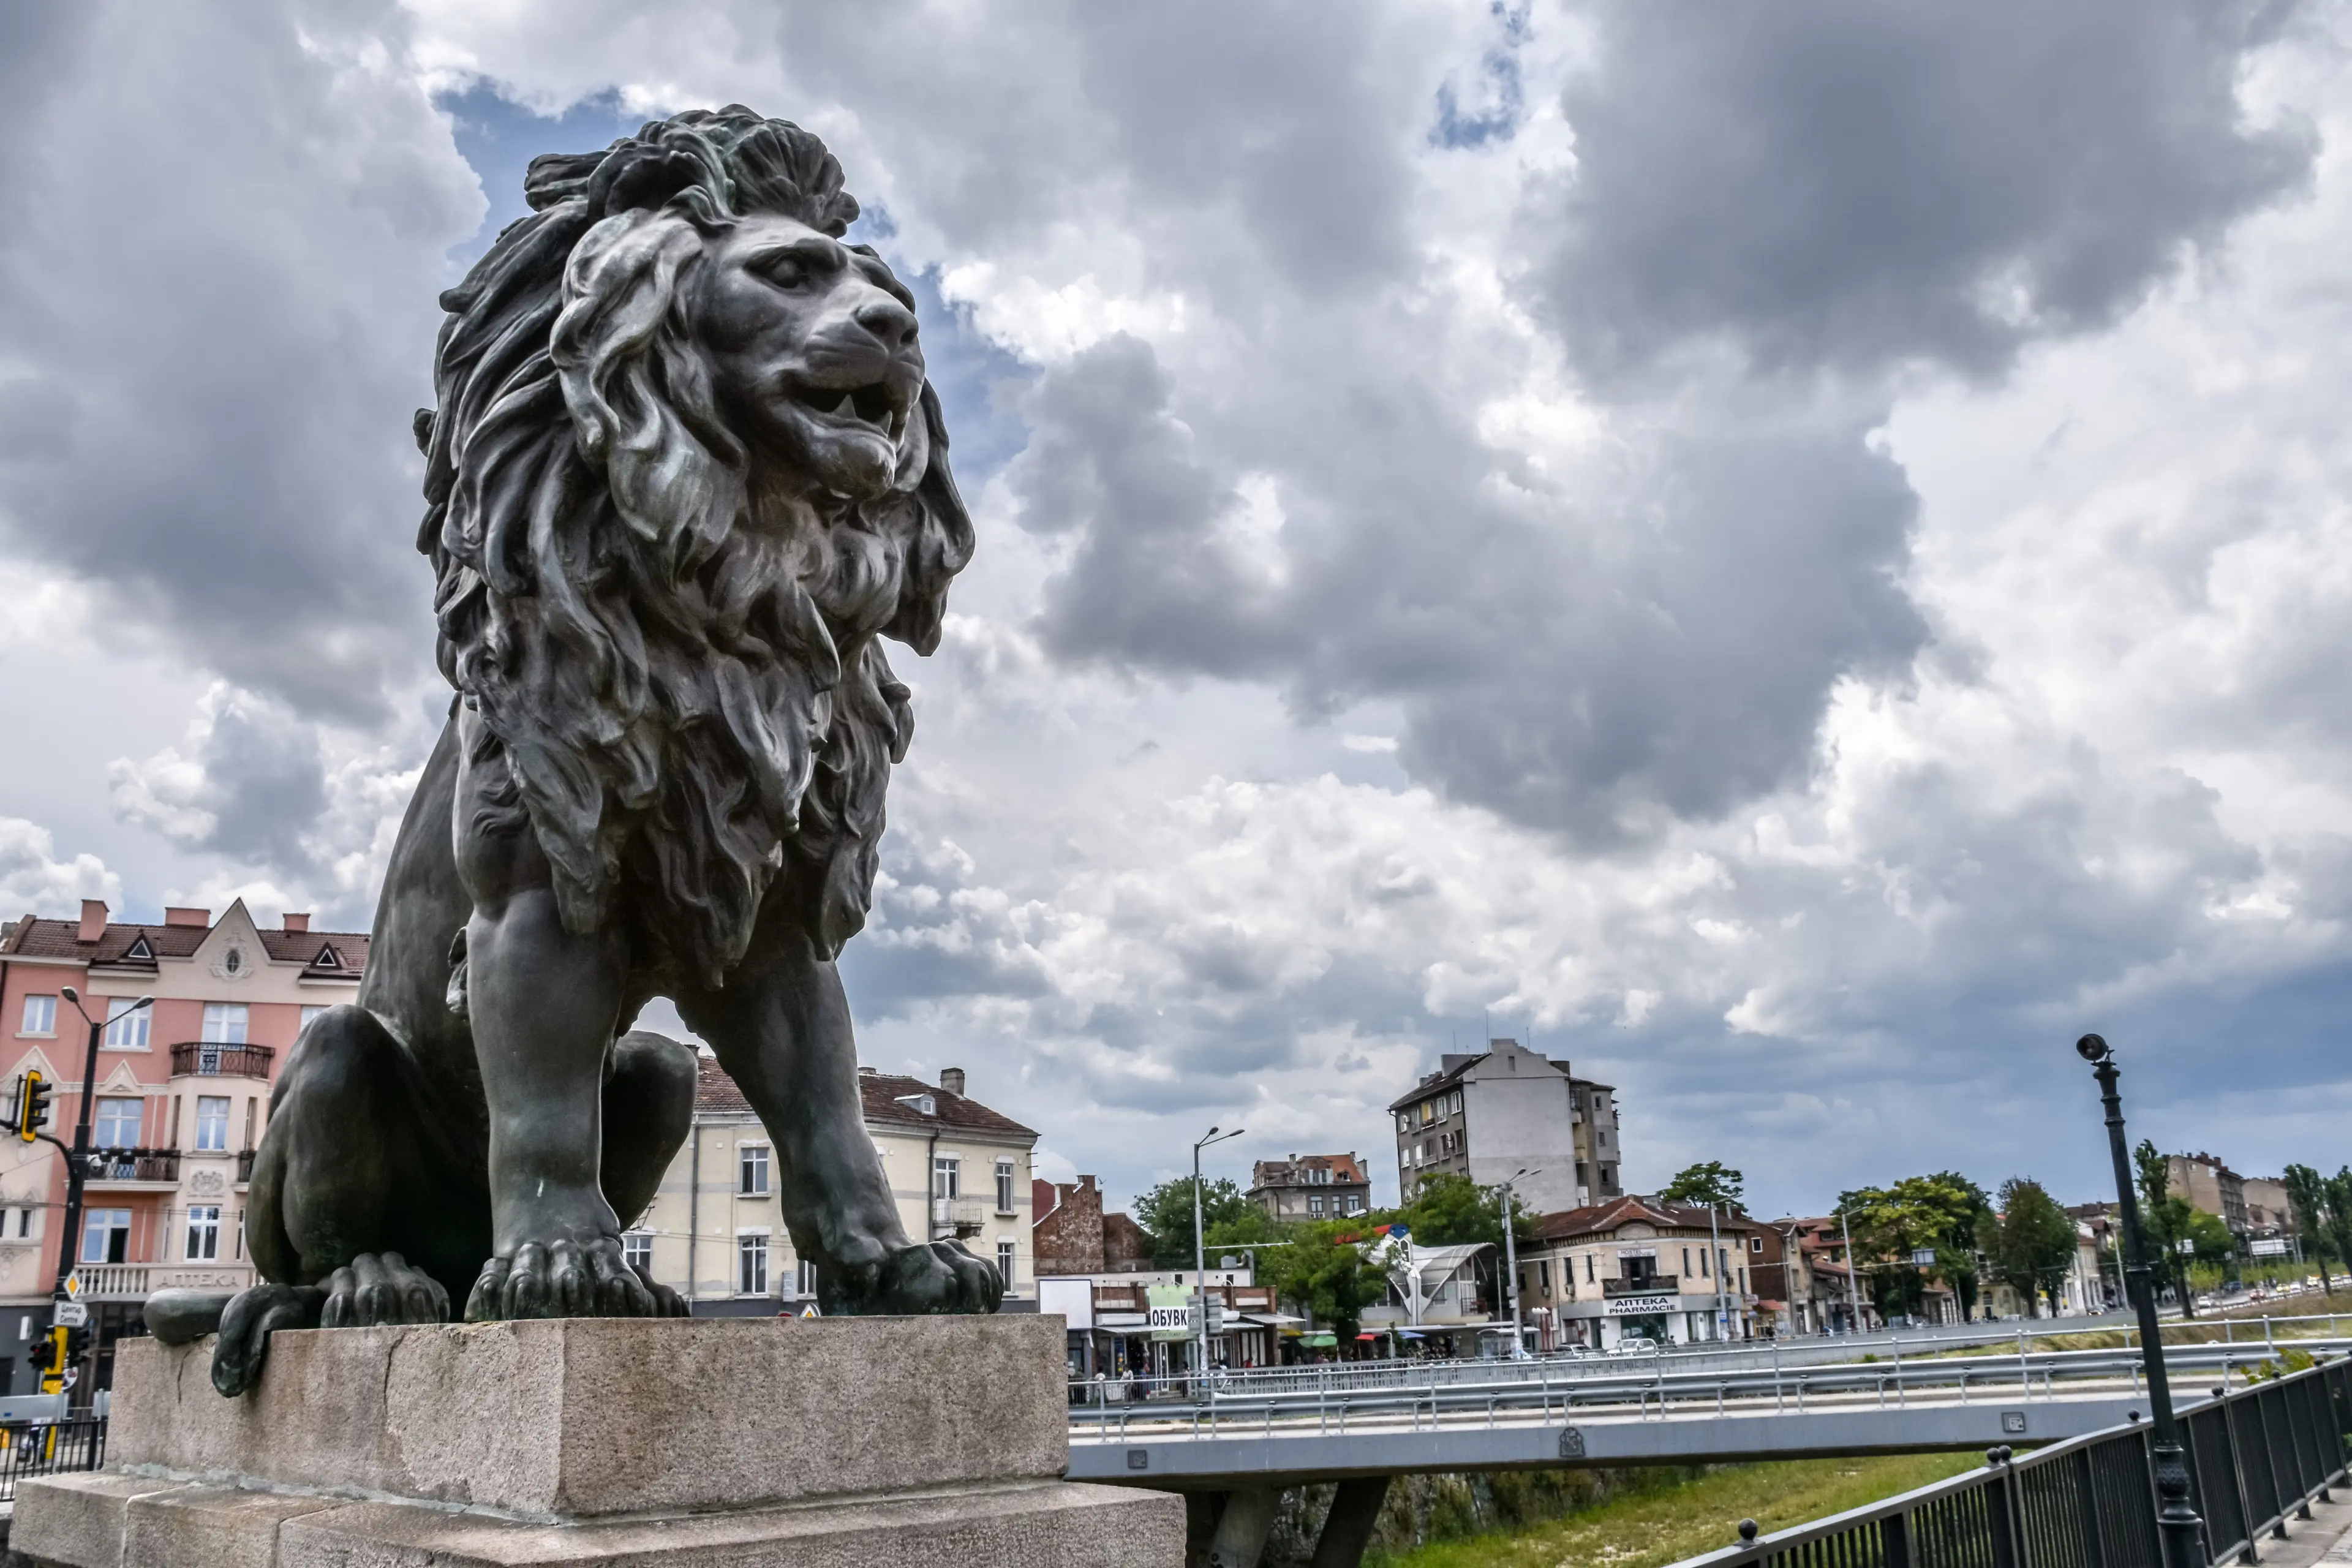 Lion statue at Lion's bridge